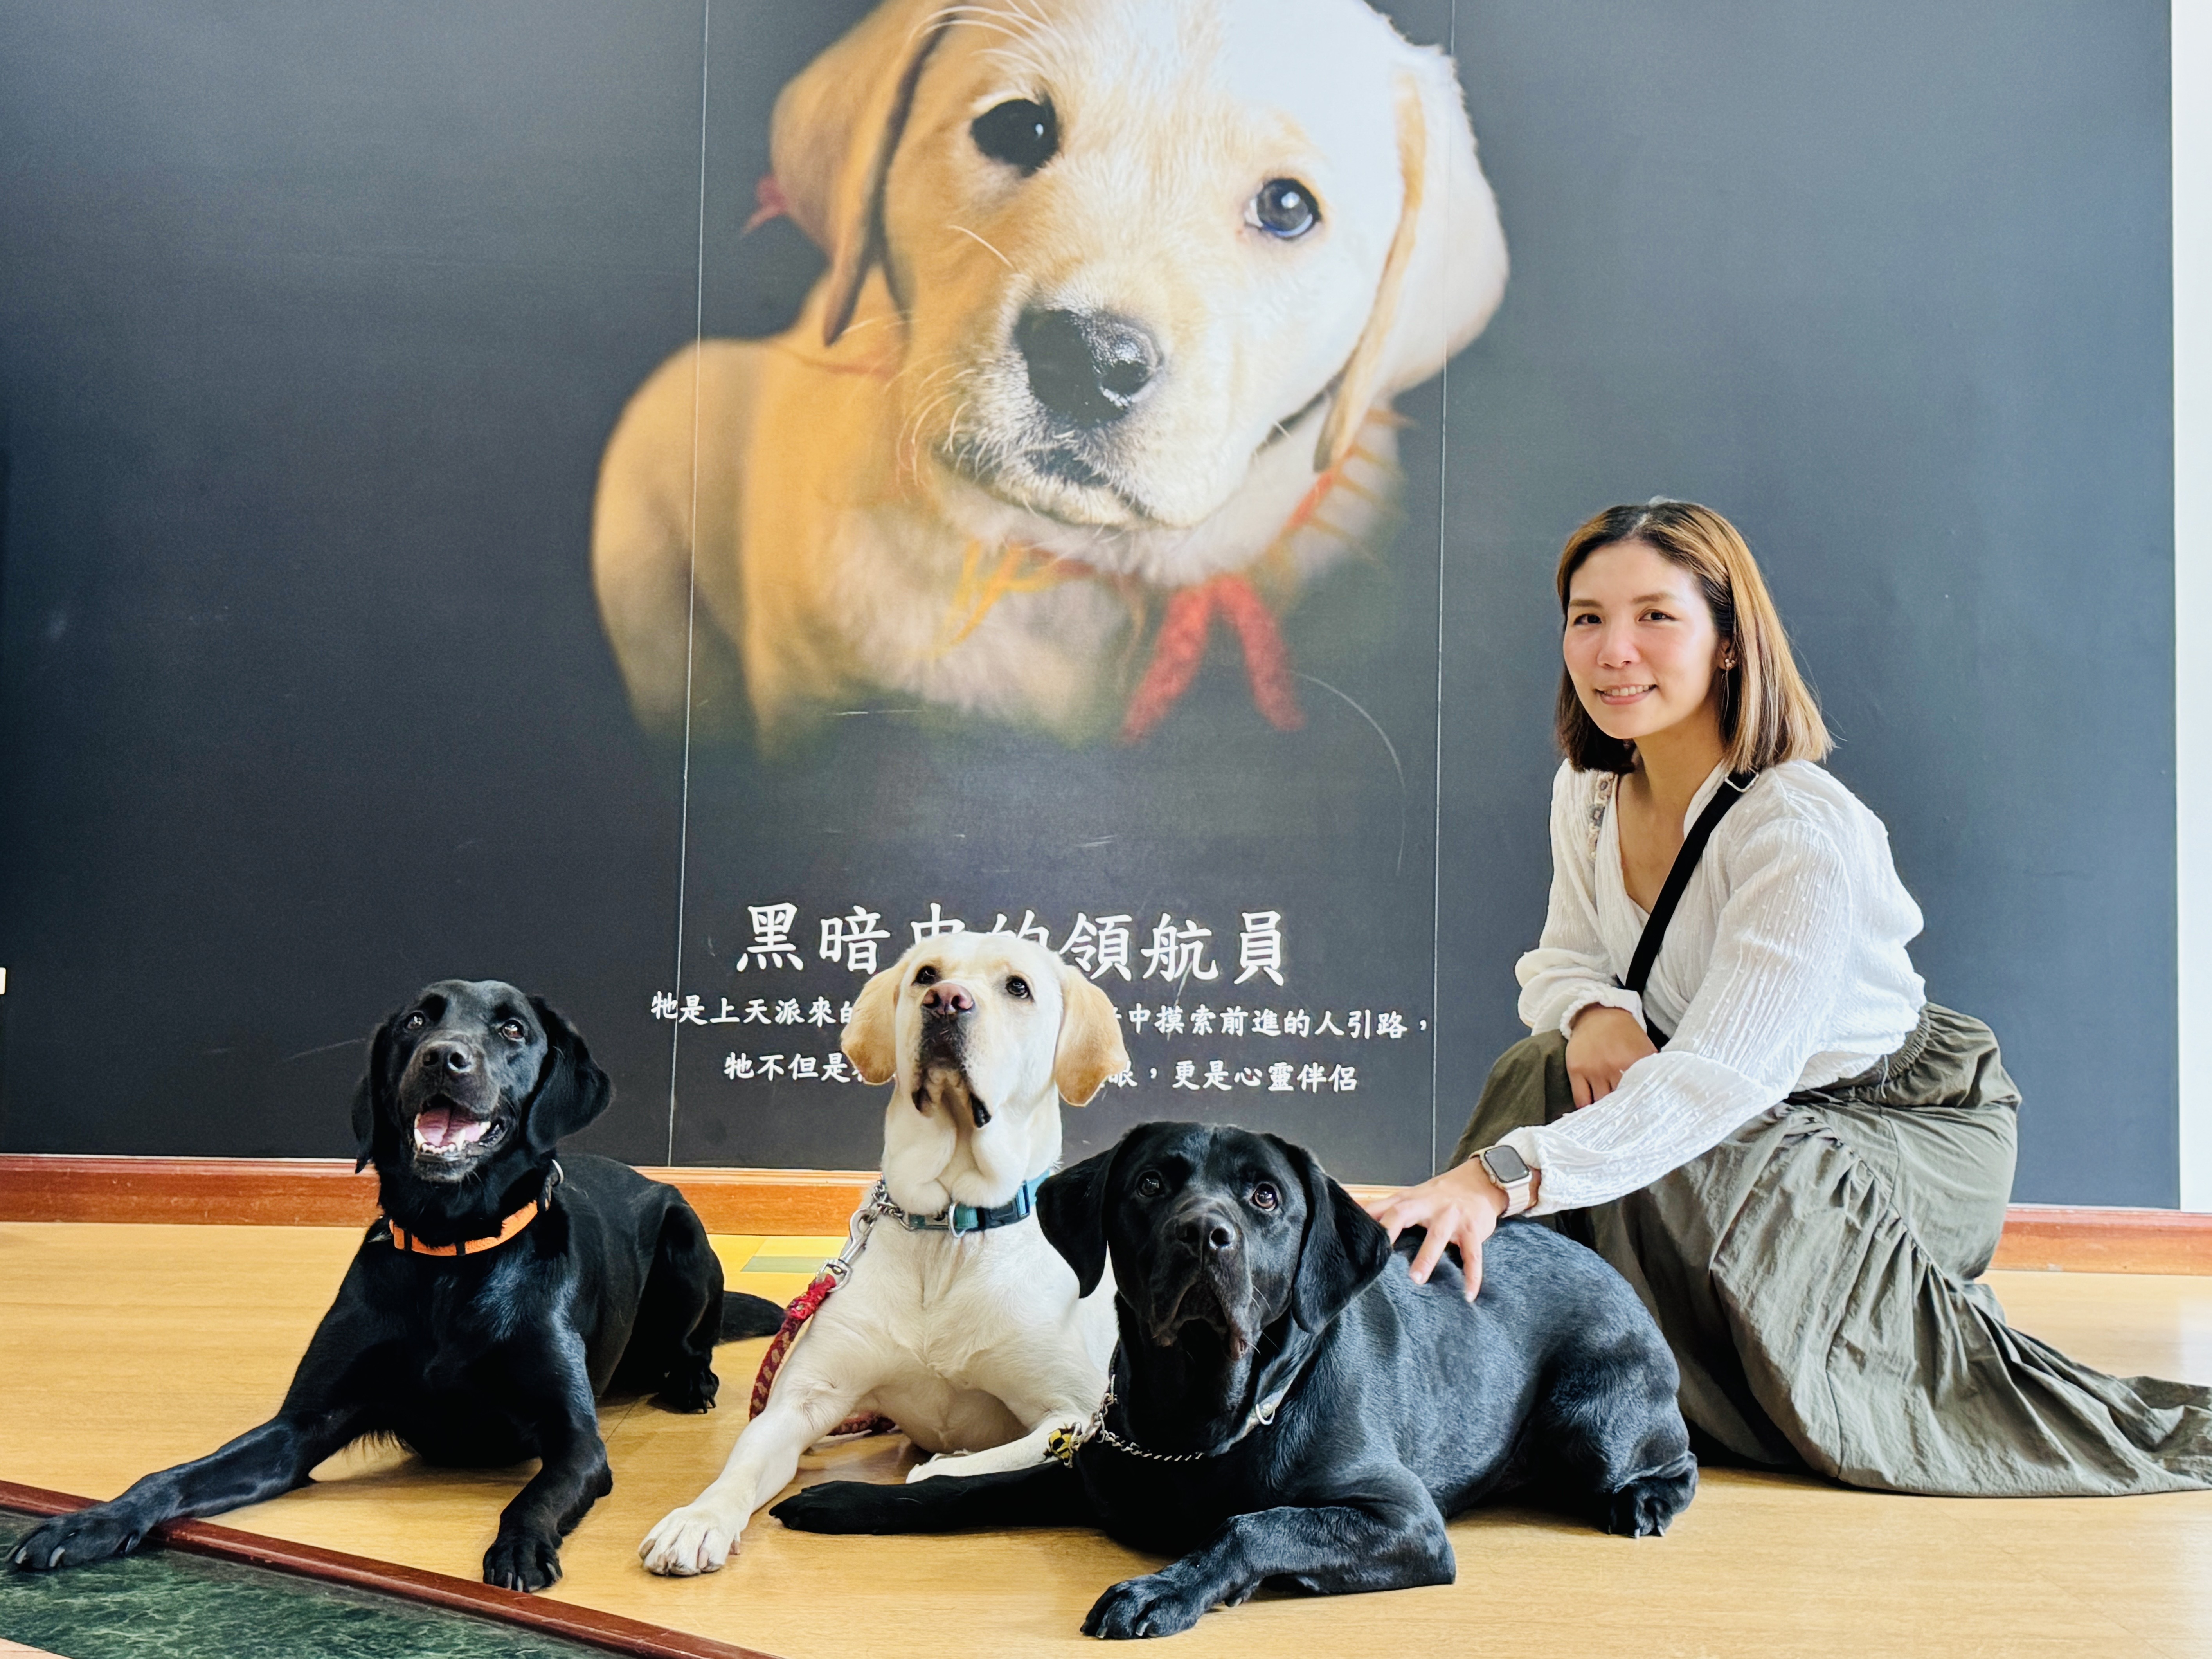 淡水古蹟博物館的「國際導盲犬日－淡古歡迎毛勇士」活動會進行導盲犬的古蹟異地受訓，大家不但可以從旁觀察，還能與牠們合影。